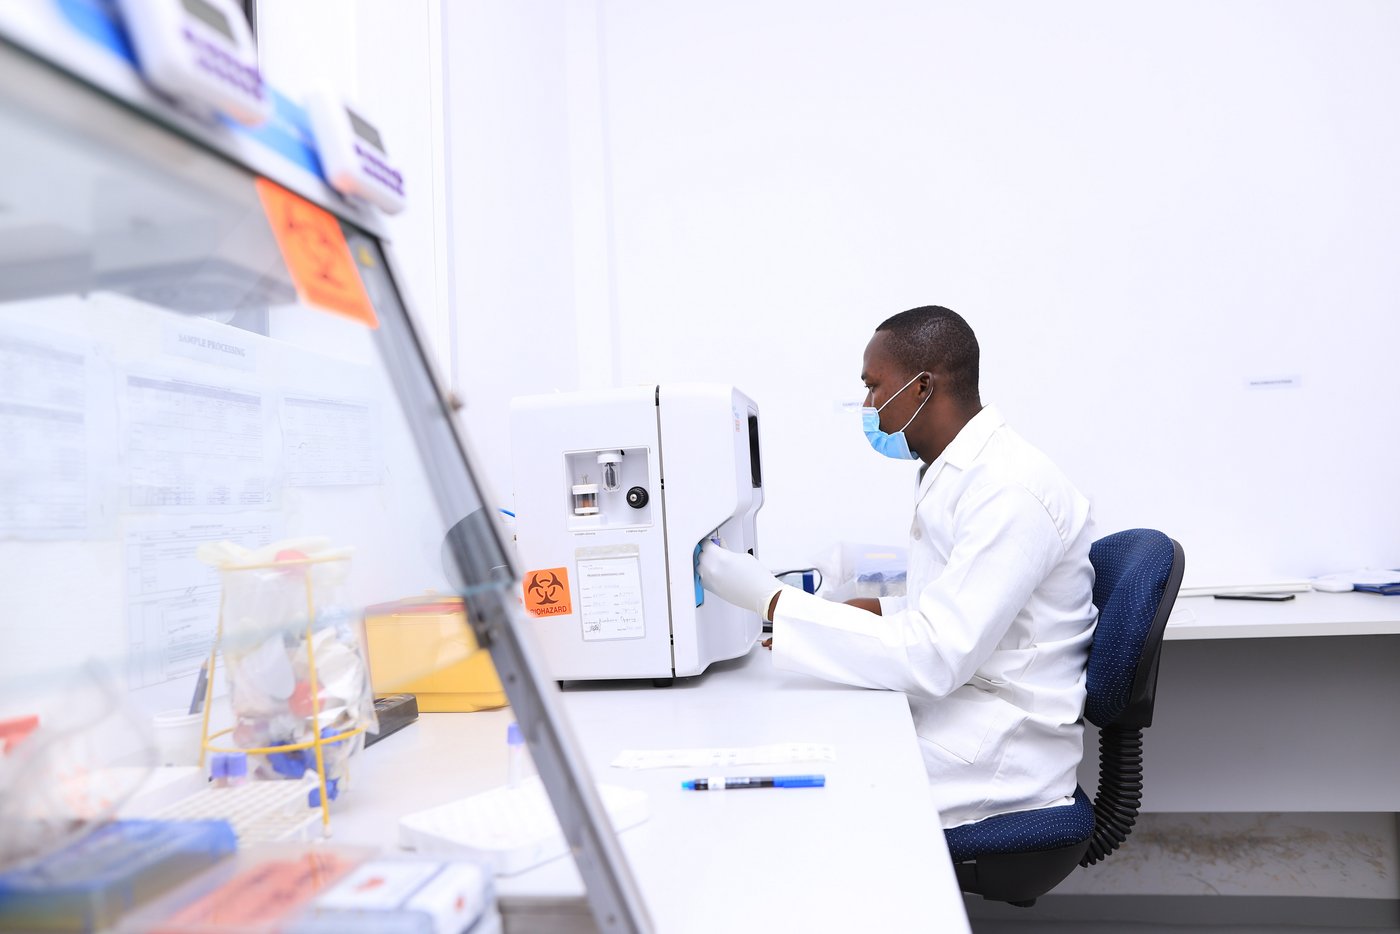 Das Foto zeigt einen Wissenschaftler an einem technischen Gerät mit der Aufschrift "Bio Hazard". Daneben steht eine Glovebox.